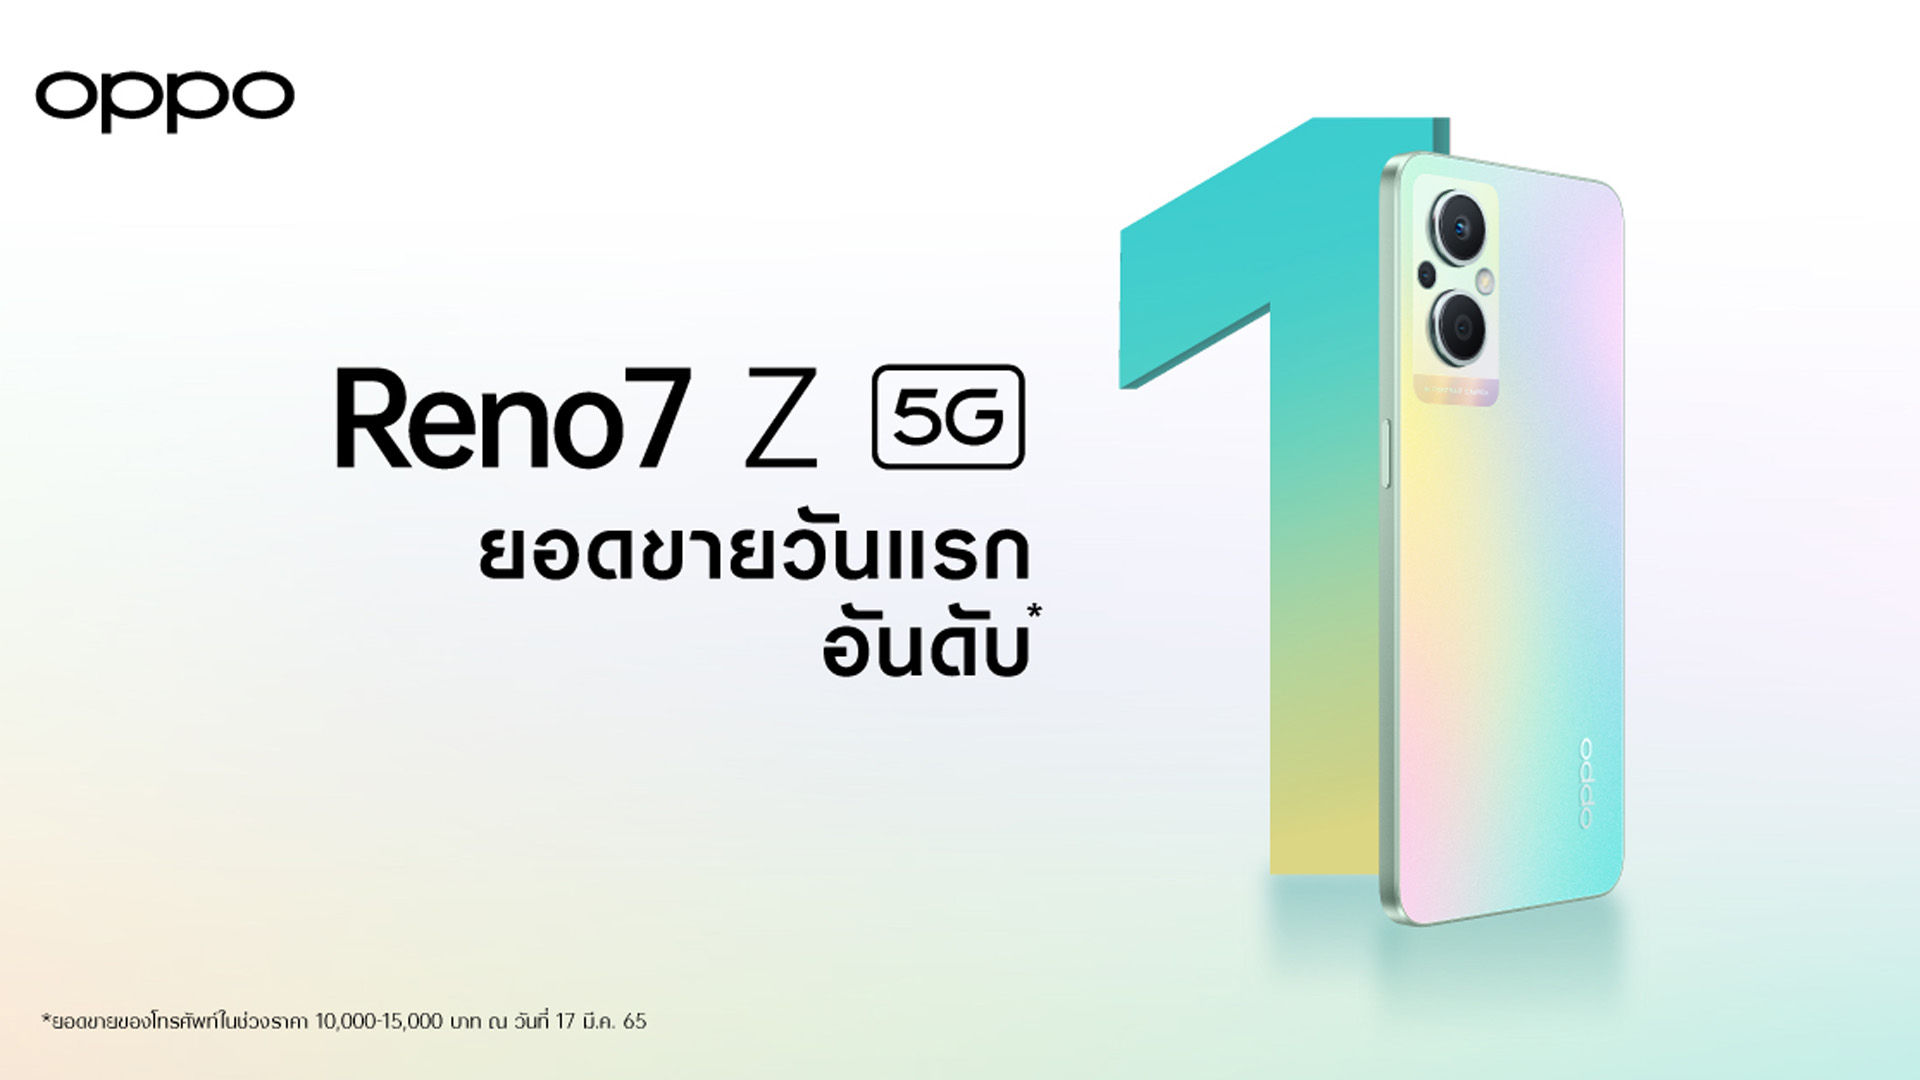 จำหน่ายแล้ววันนี้! “OPPO Reno7 Z 5G” หลังเปิดตัวแรง ยอดขายสูงสุดตั้งแต่จำหน่ายวันแรก